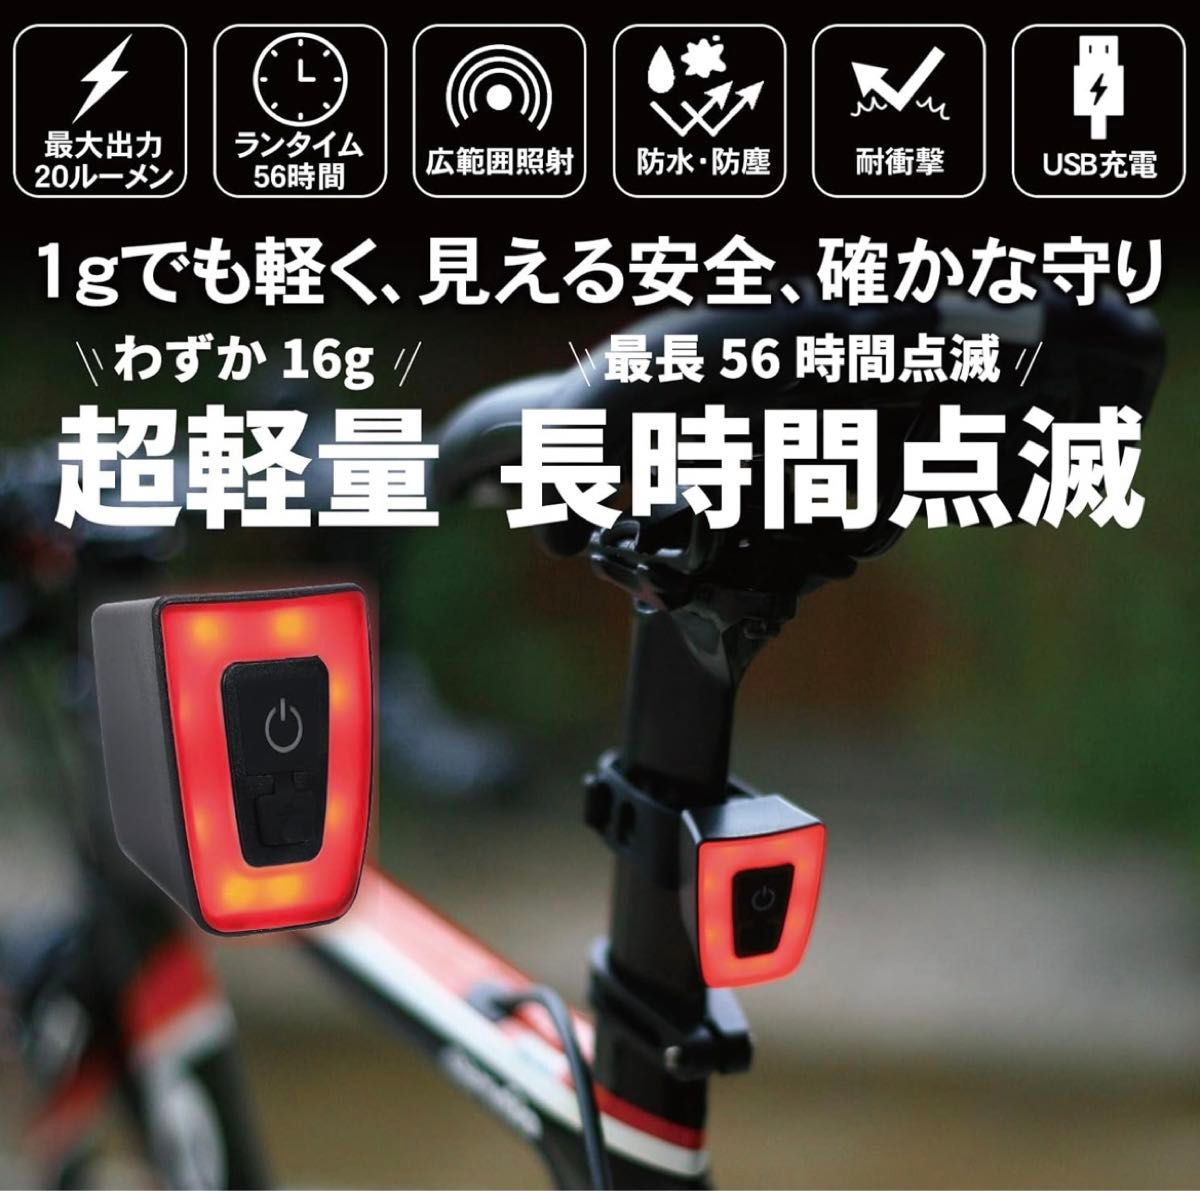 自転車 テールライト 20ルーメン 最長56時間持続点灯 IP65防水 USB充電式 ロードバイク クロスバイク チャリ 配達 夜